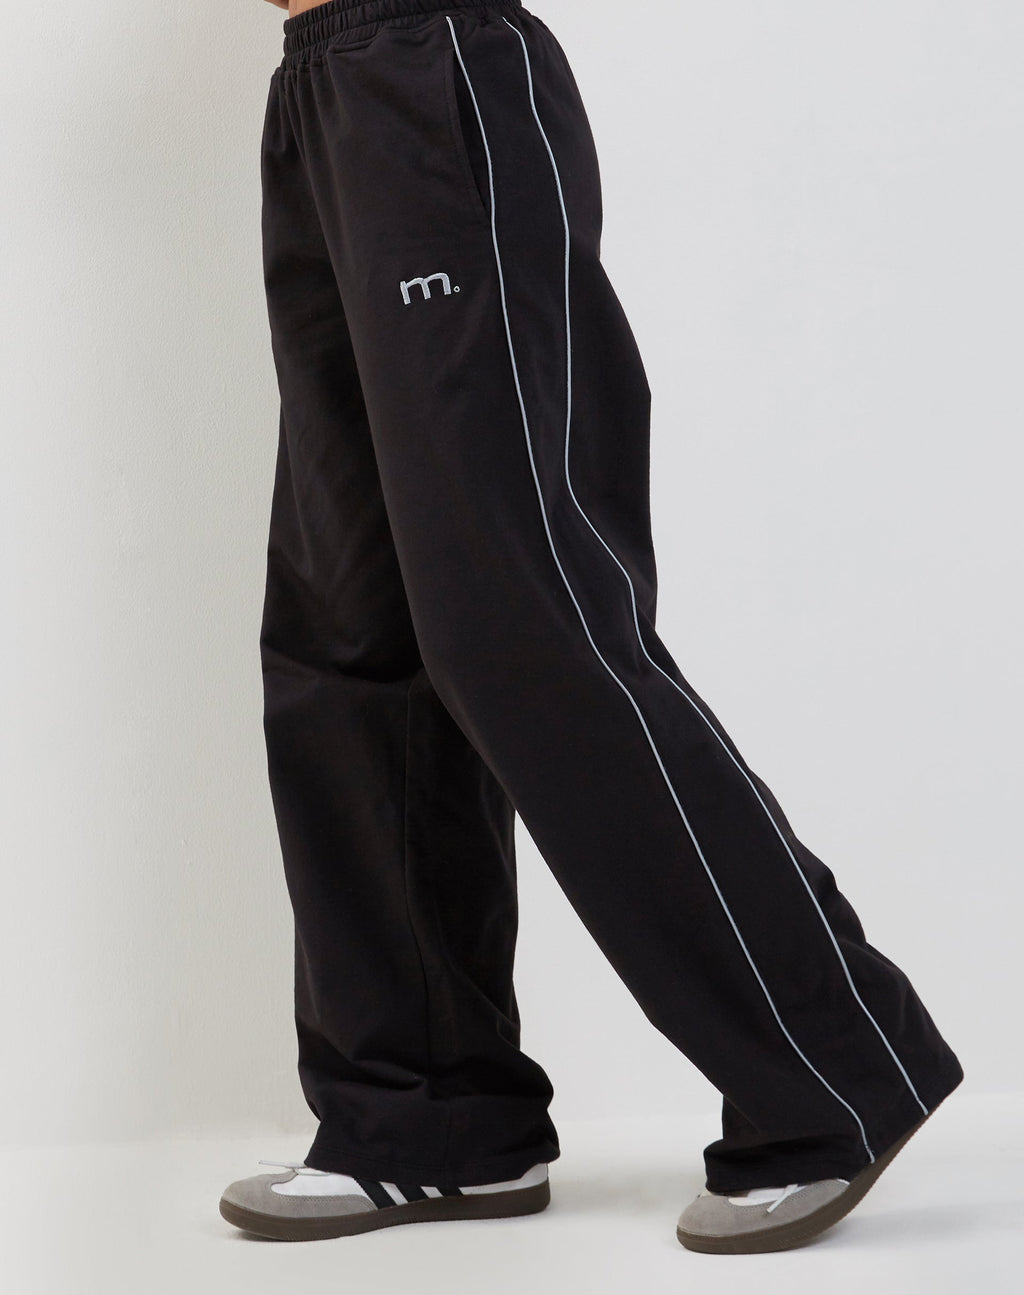 Pantalon de jogging à jambes larges Benton en noir avec passepoils gris foncé et broderie 'M'.